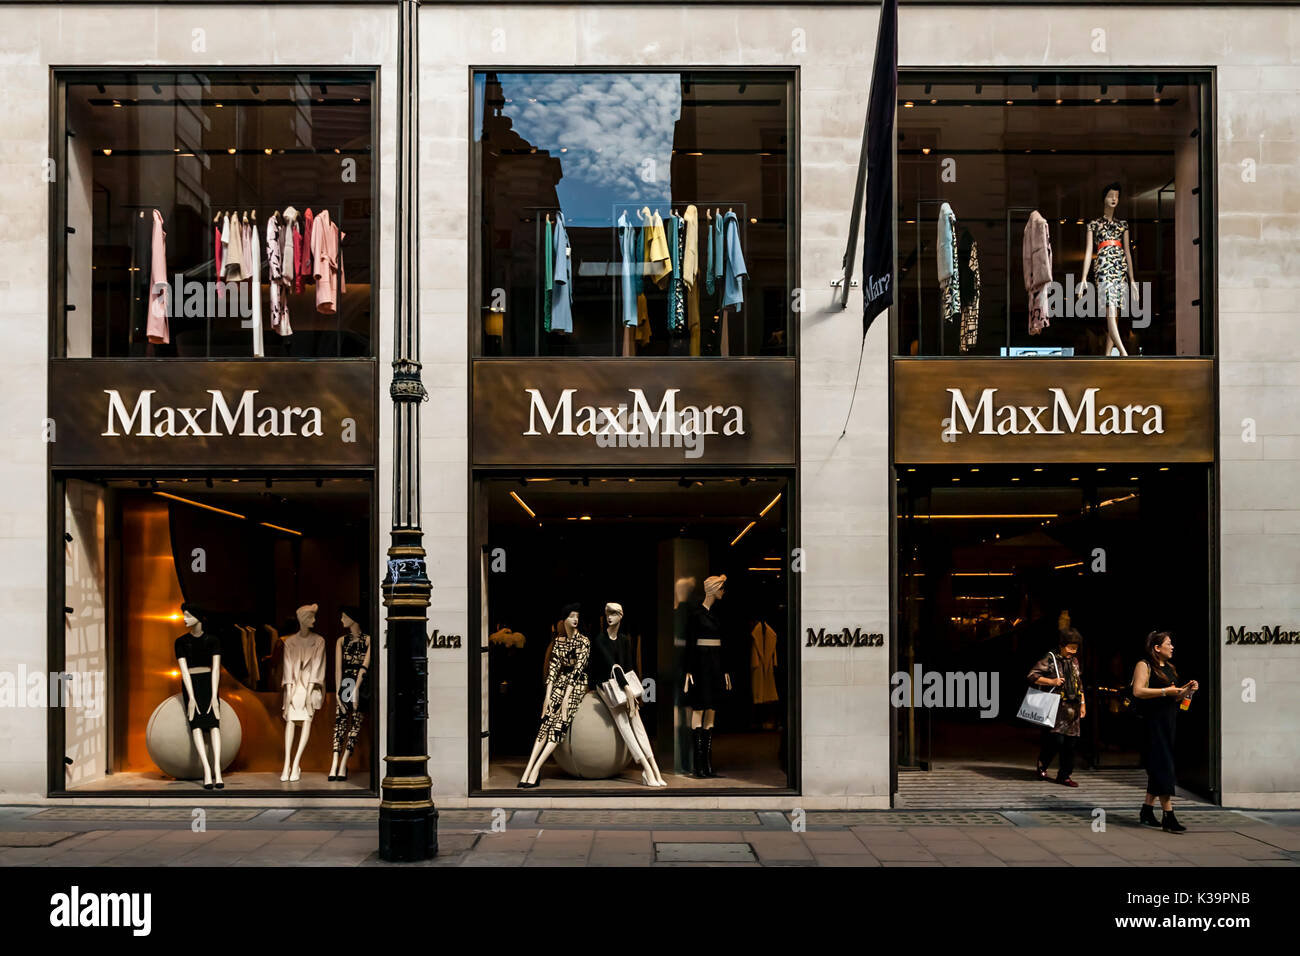 MaxMara negozio di abbigliamento, Old Bond Street, Londra, Regno Unito Foto Stock